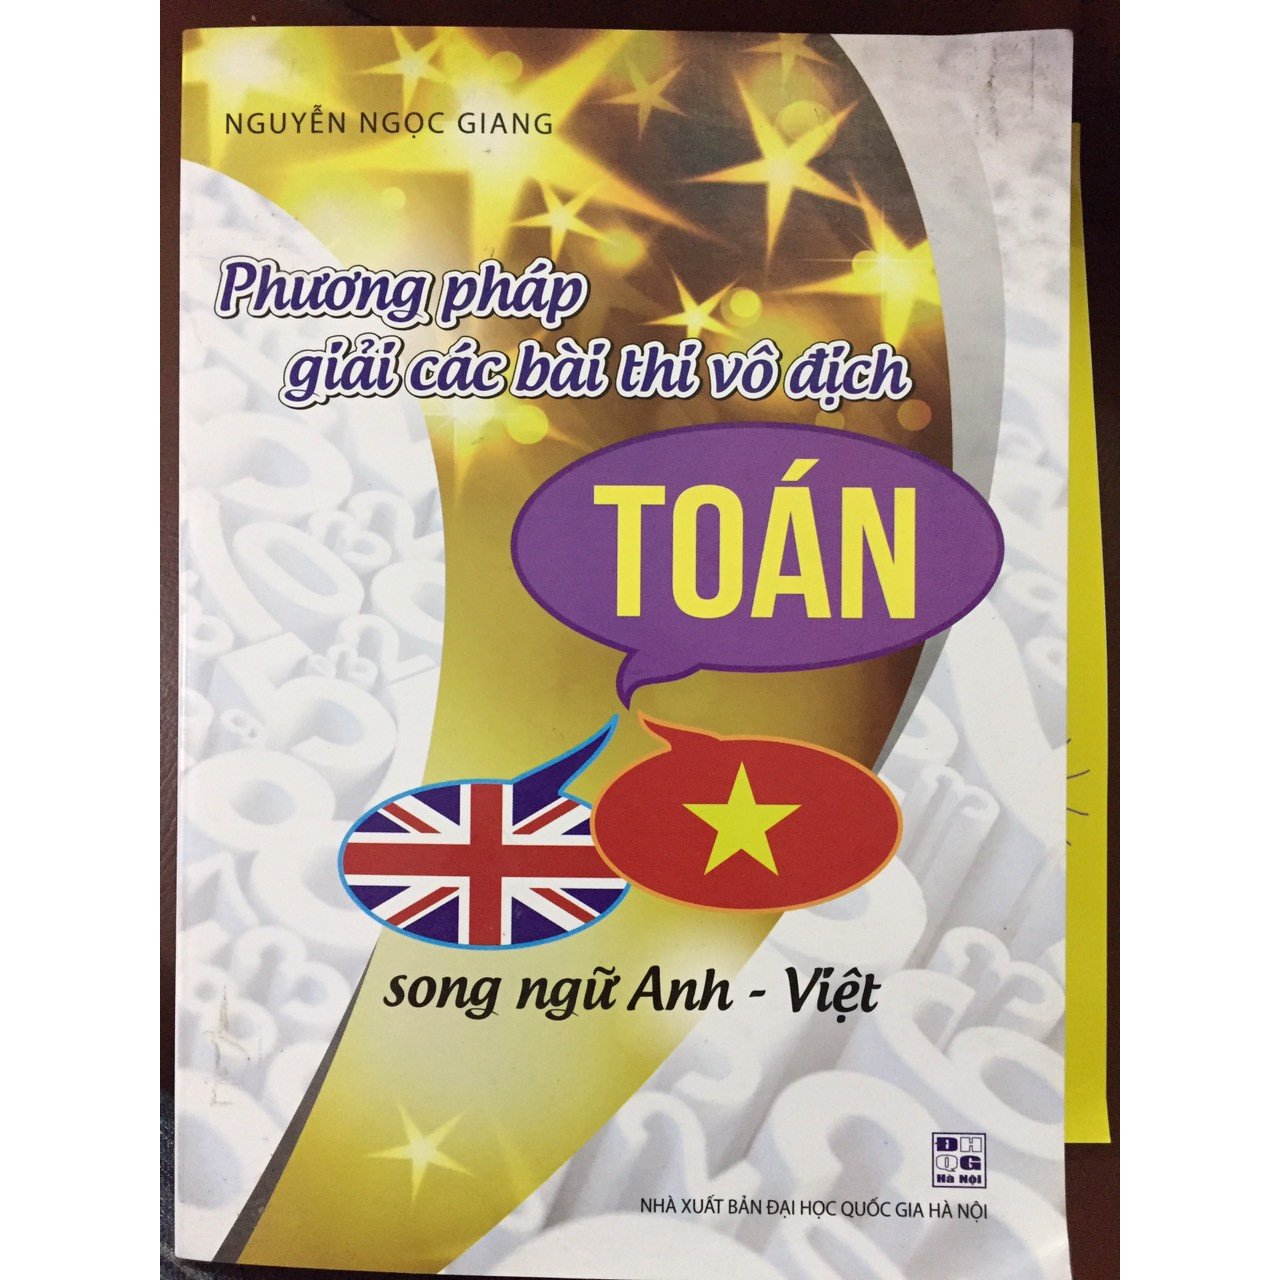 Phương pháp giải các bài thi vô địch Toán song ngữ Anh -Việt